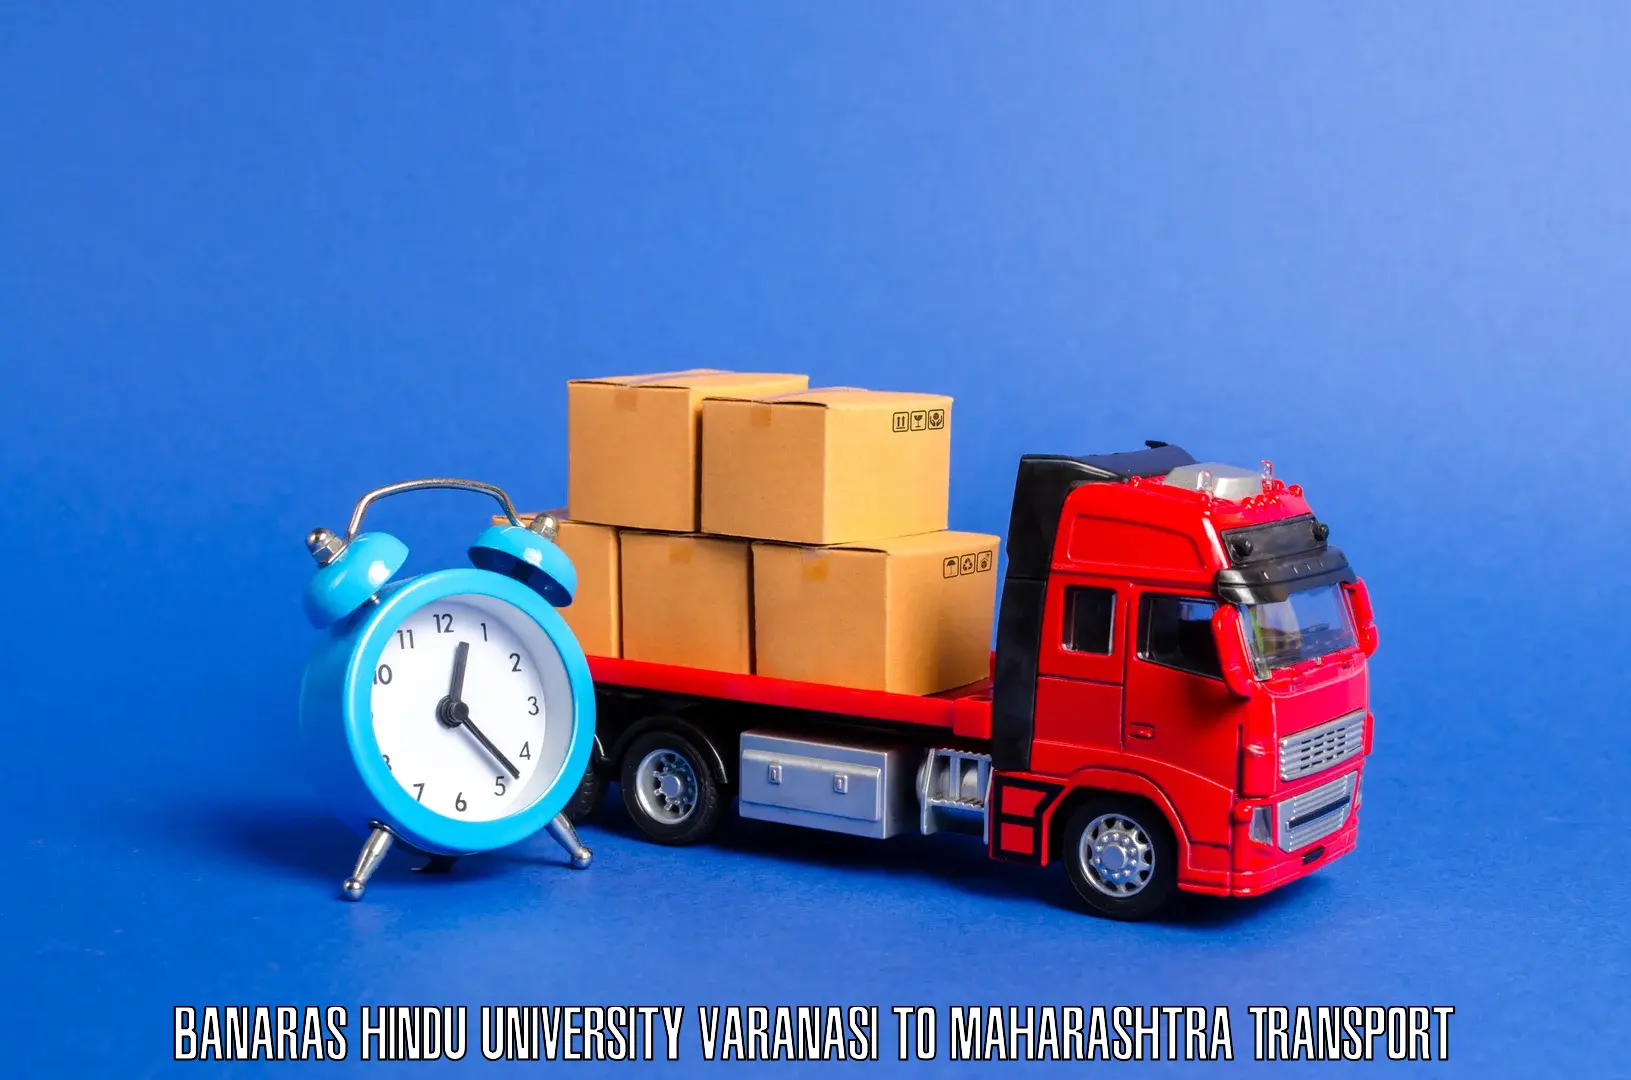 Transportation solution services in Banaras Hindu University Varanasi to Ganpatipule